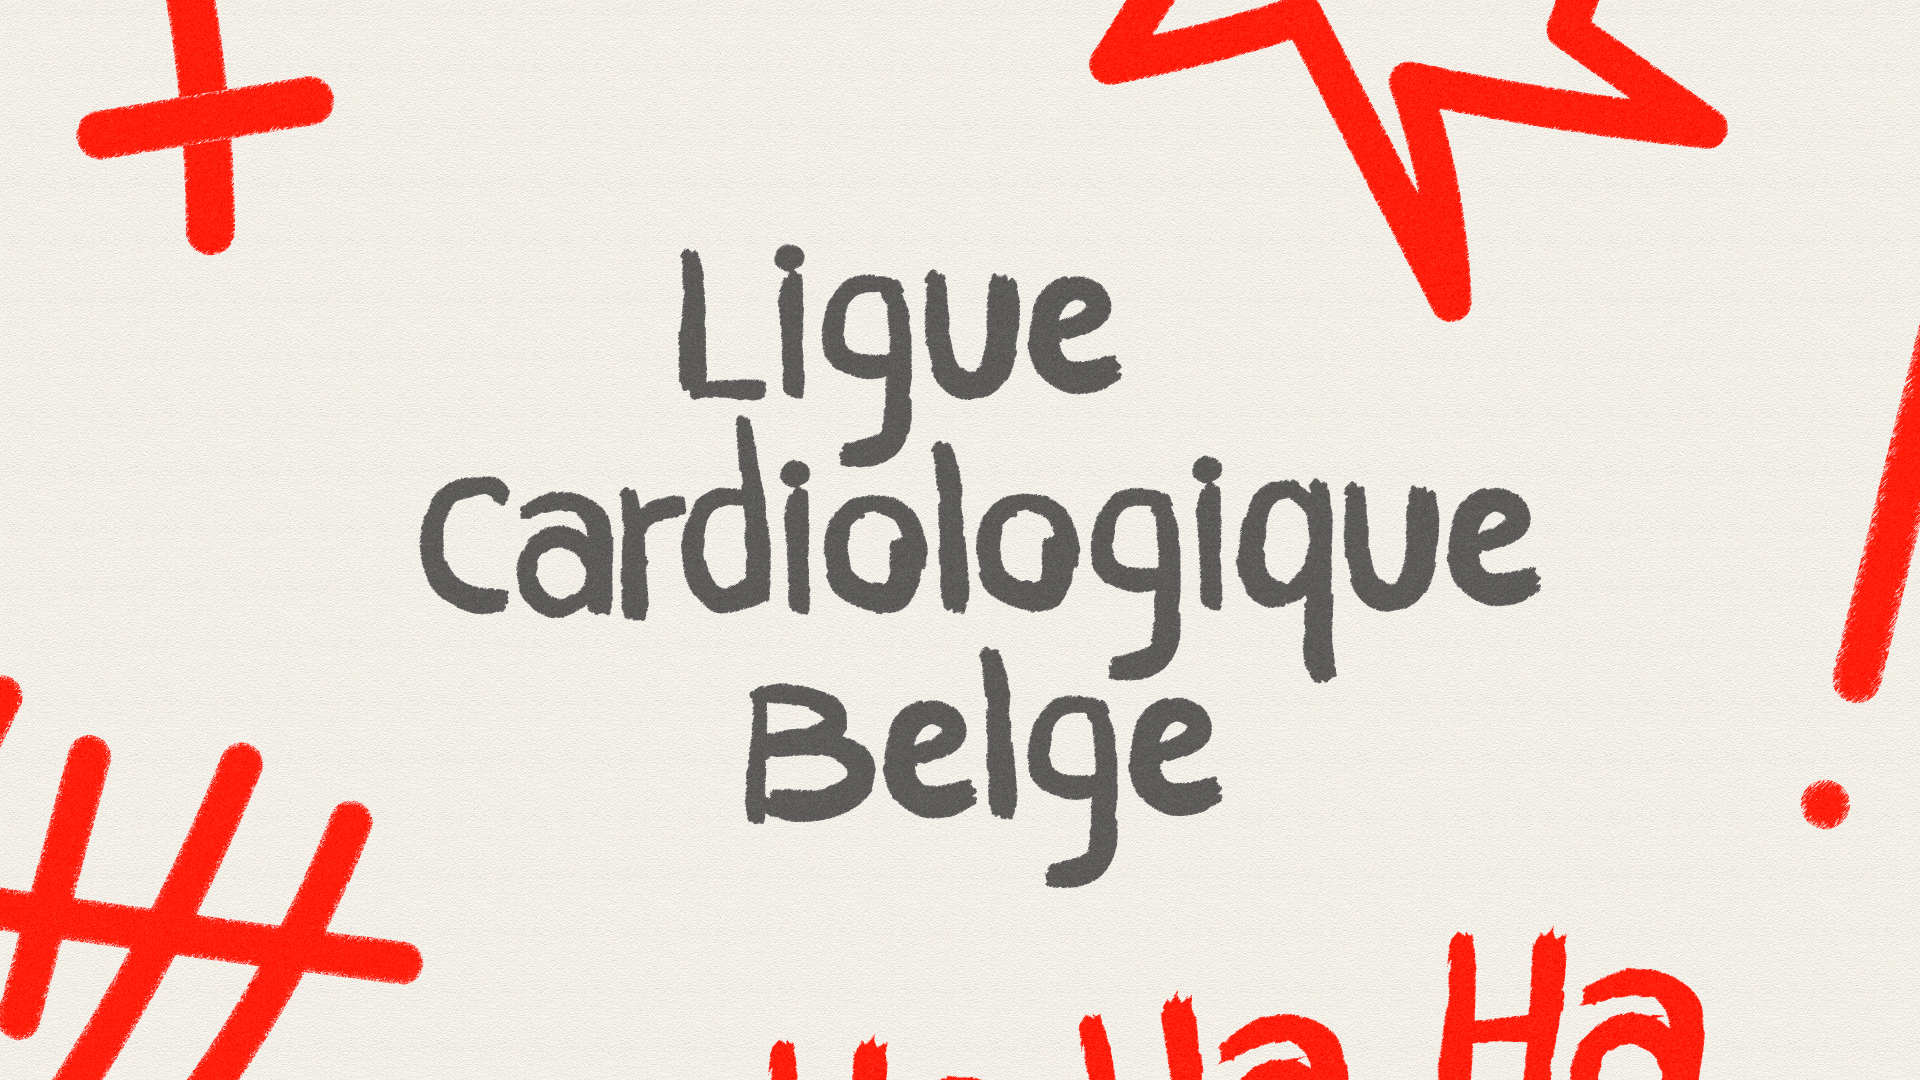 Belgian Cardiological League